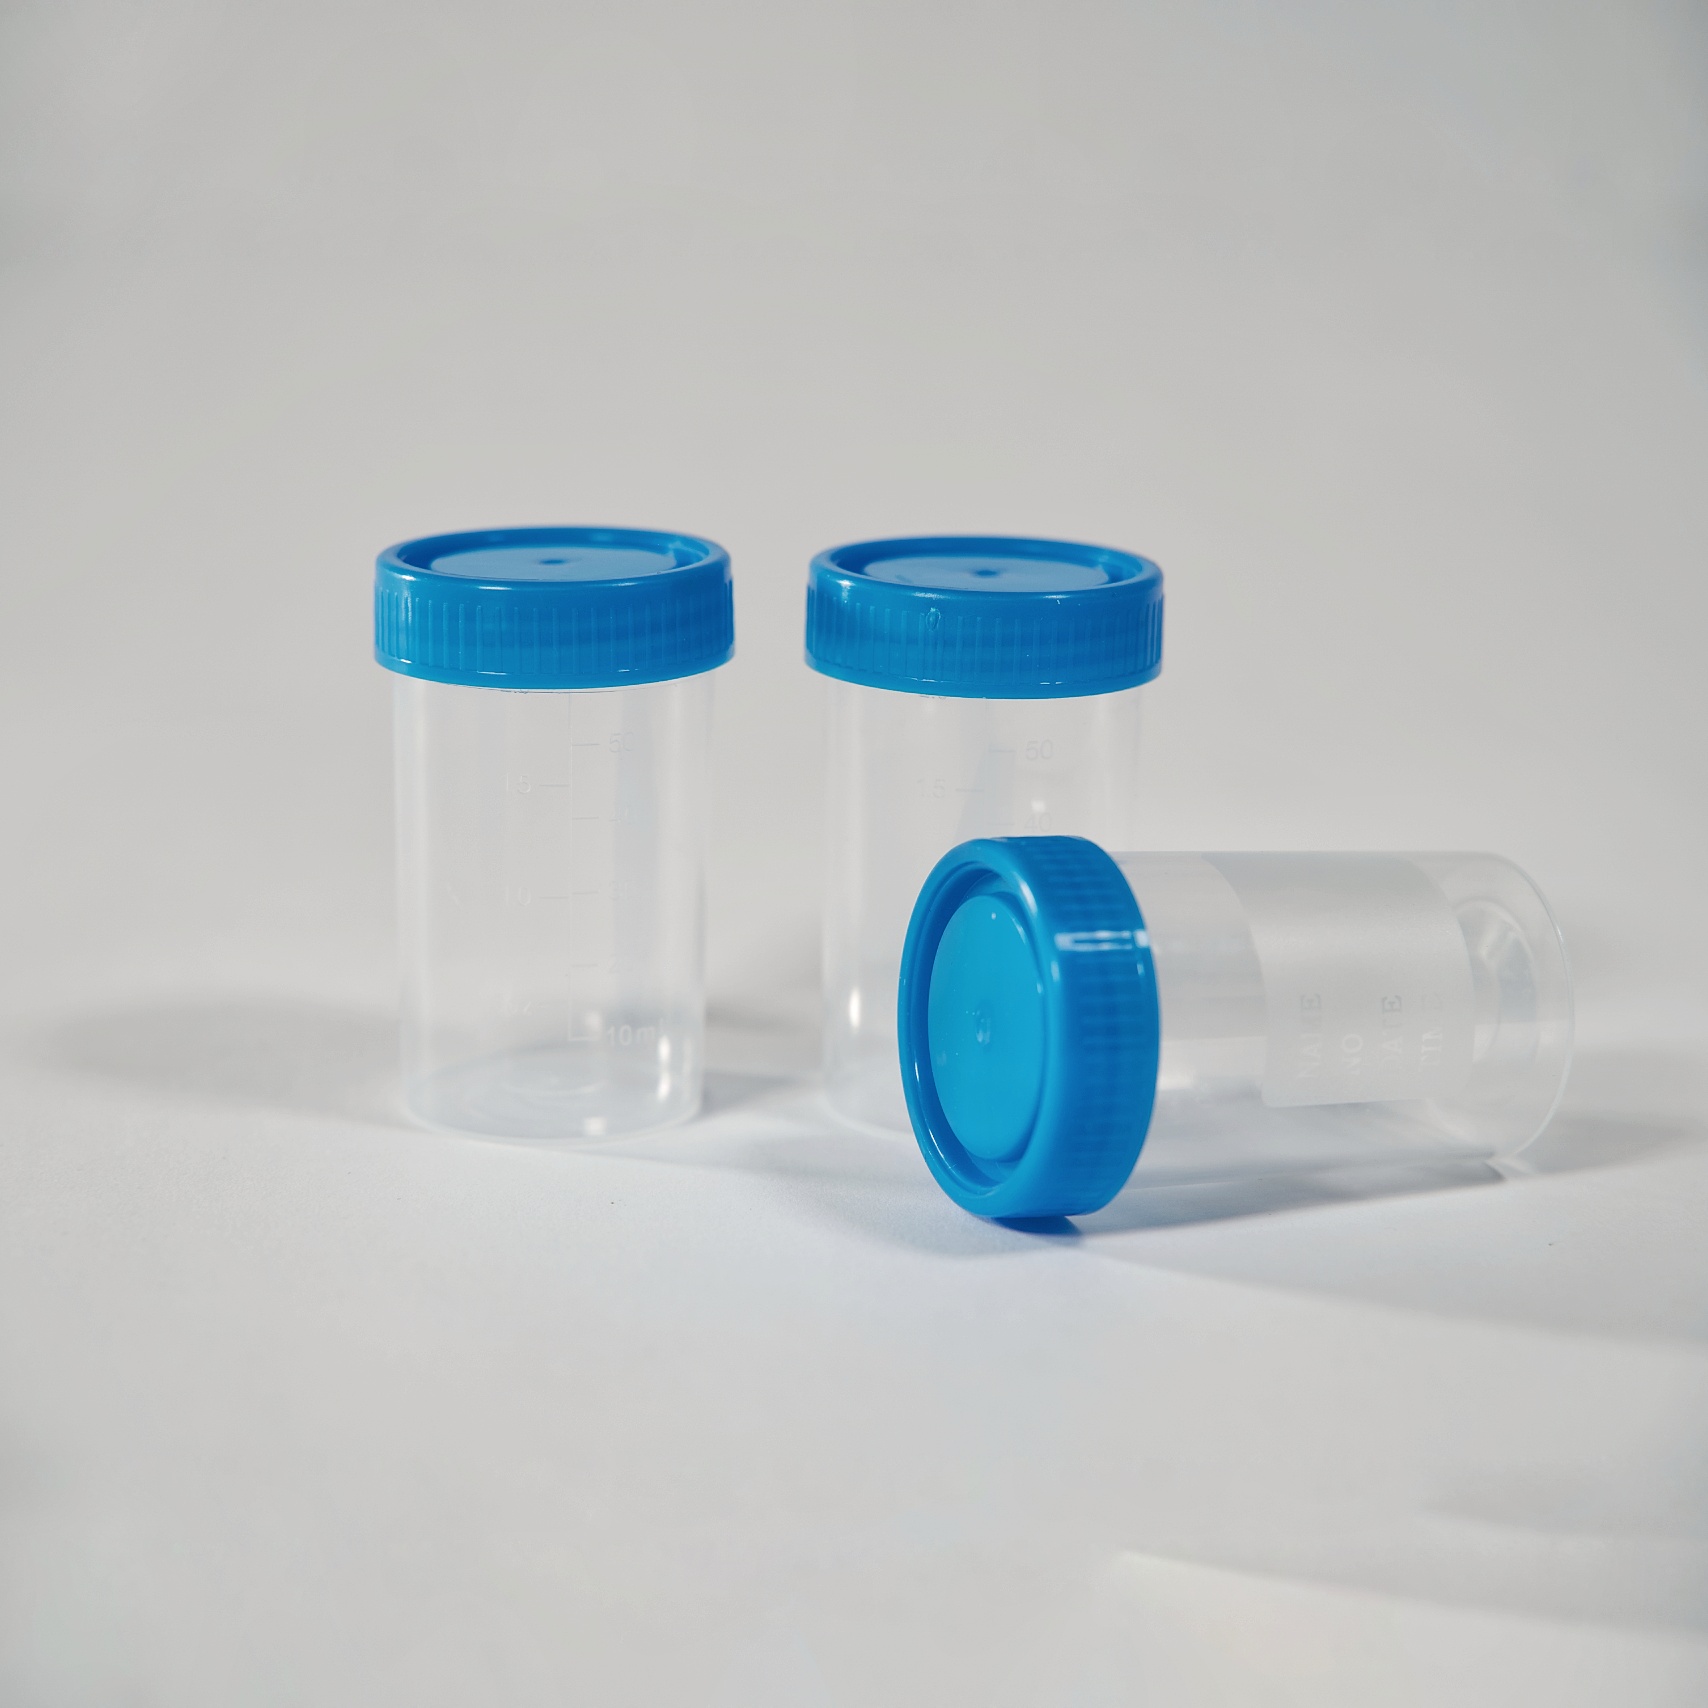 Эмнэлэг, сургууль, лабораторид төрөл бүрийн таглаатай нэг удаагийн РР шээсний сав